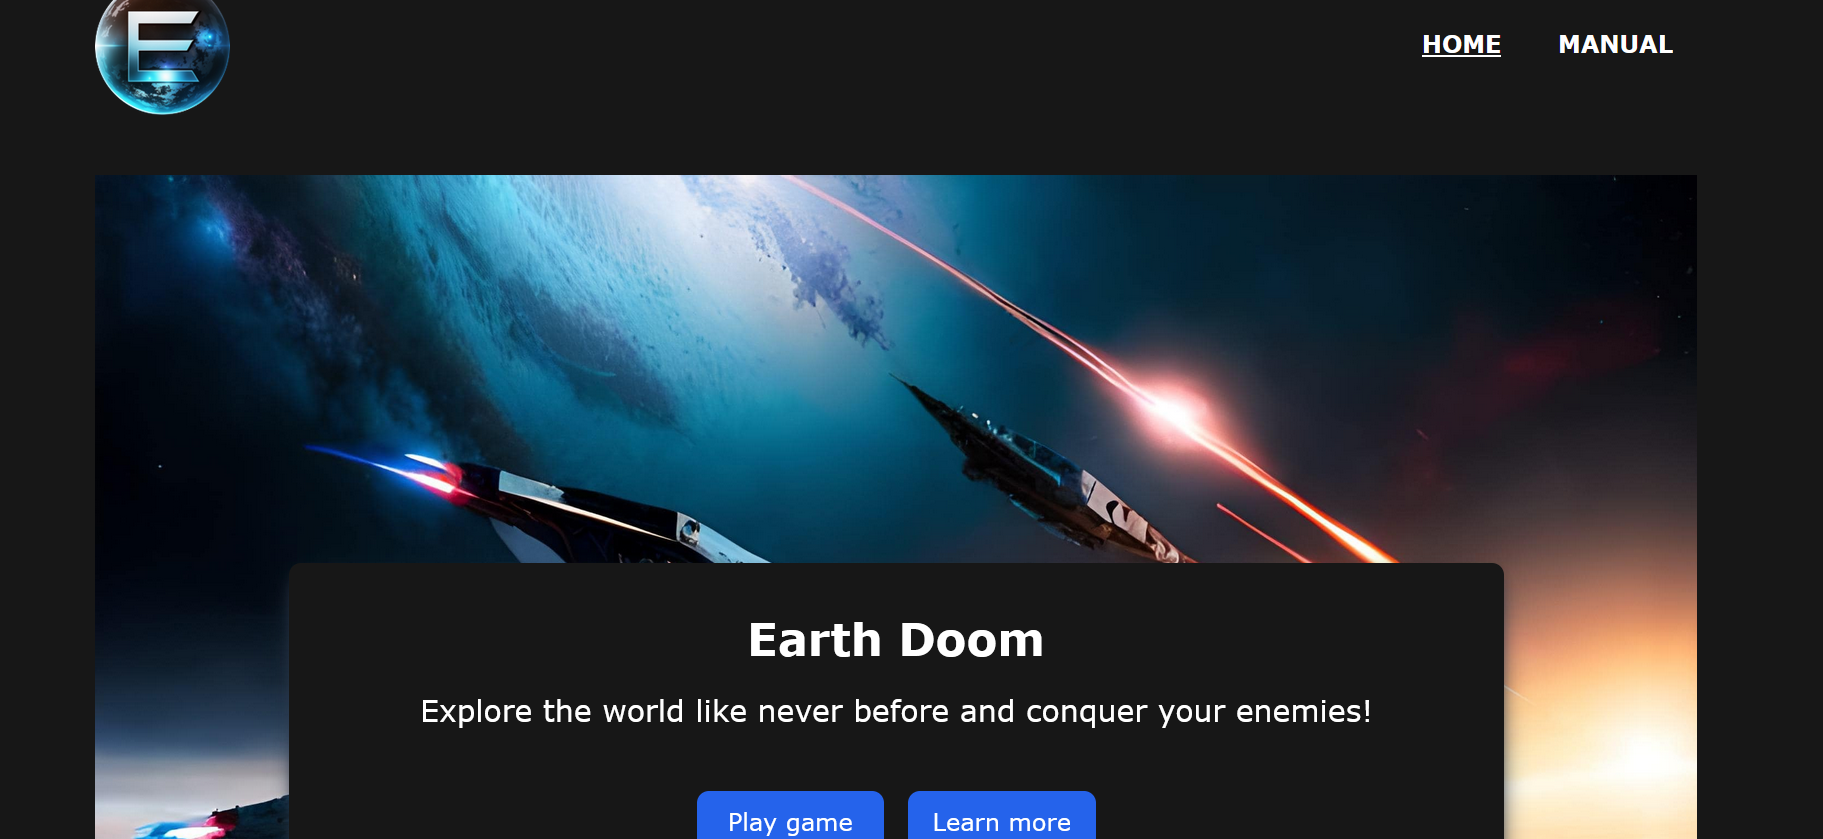 Earth Doom